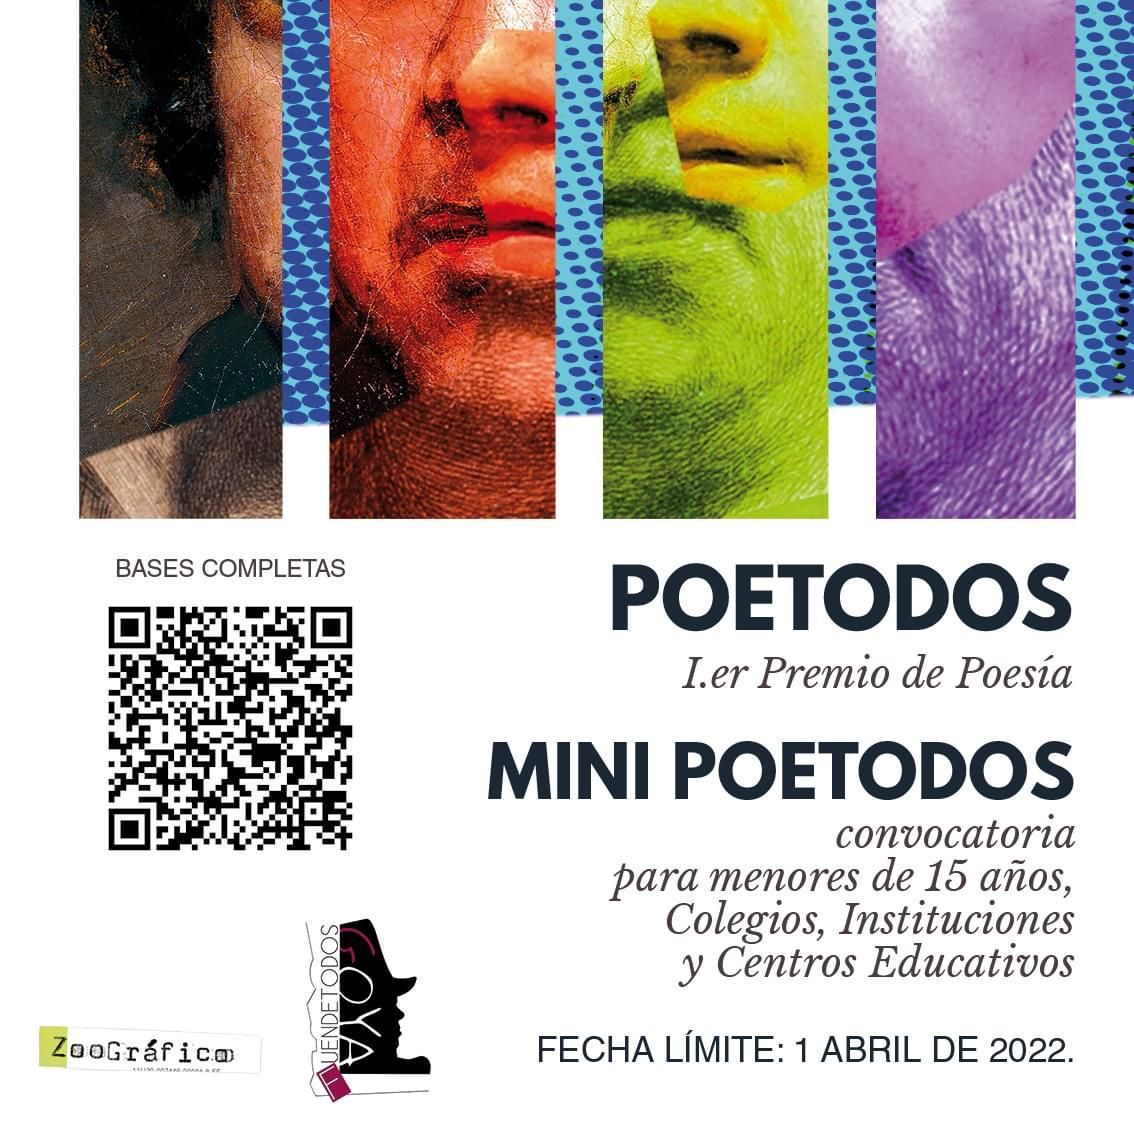 El Festival Poetodos de poesía será uno de los actos que tendrán lugar en verano.